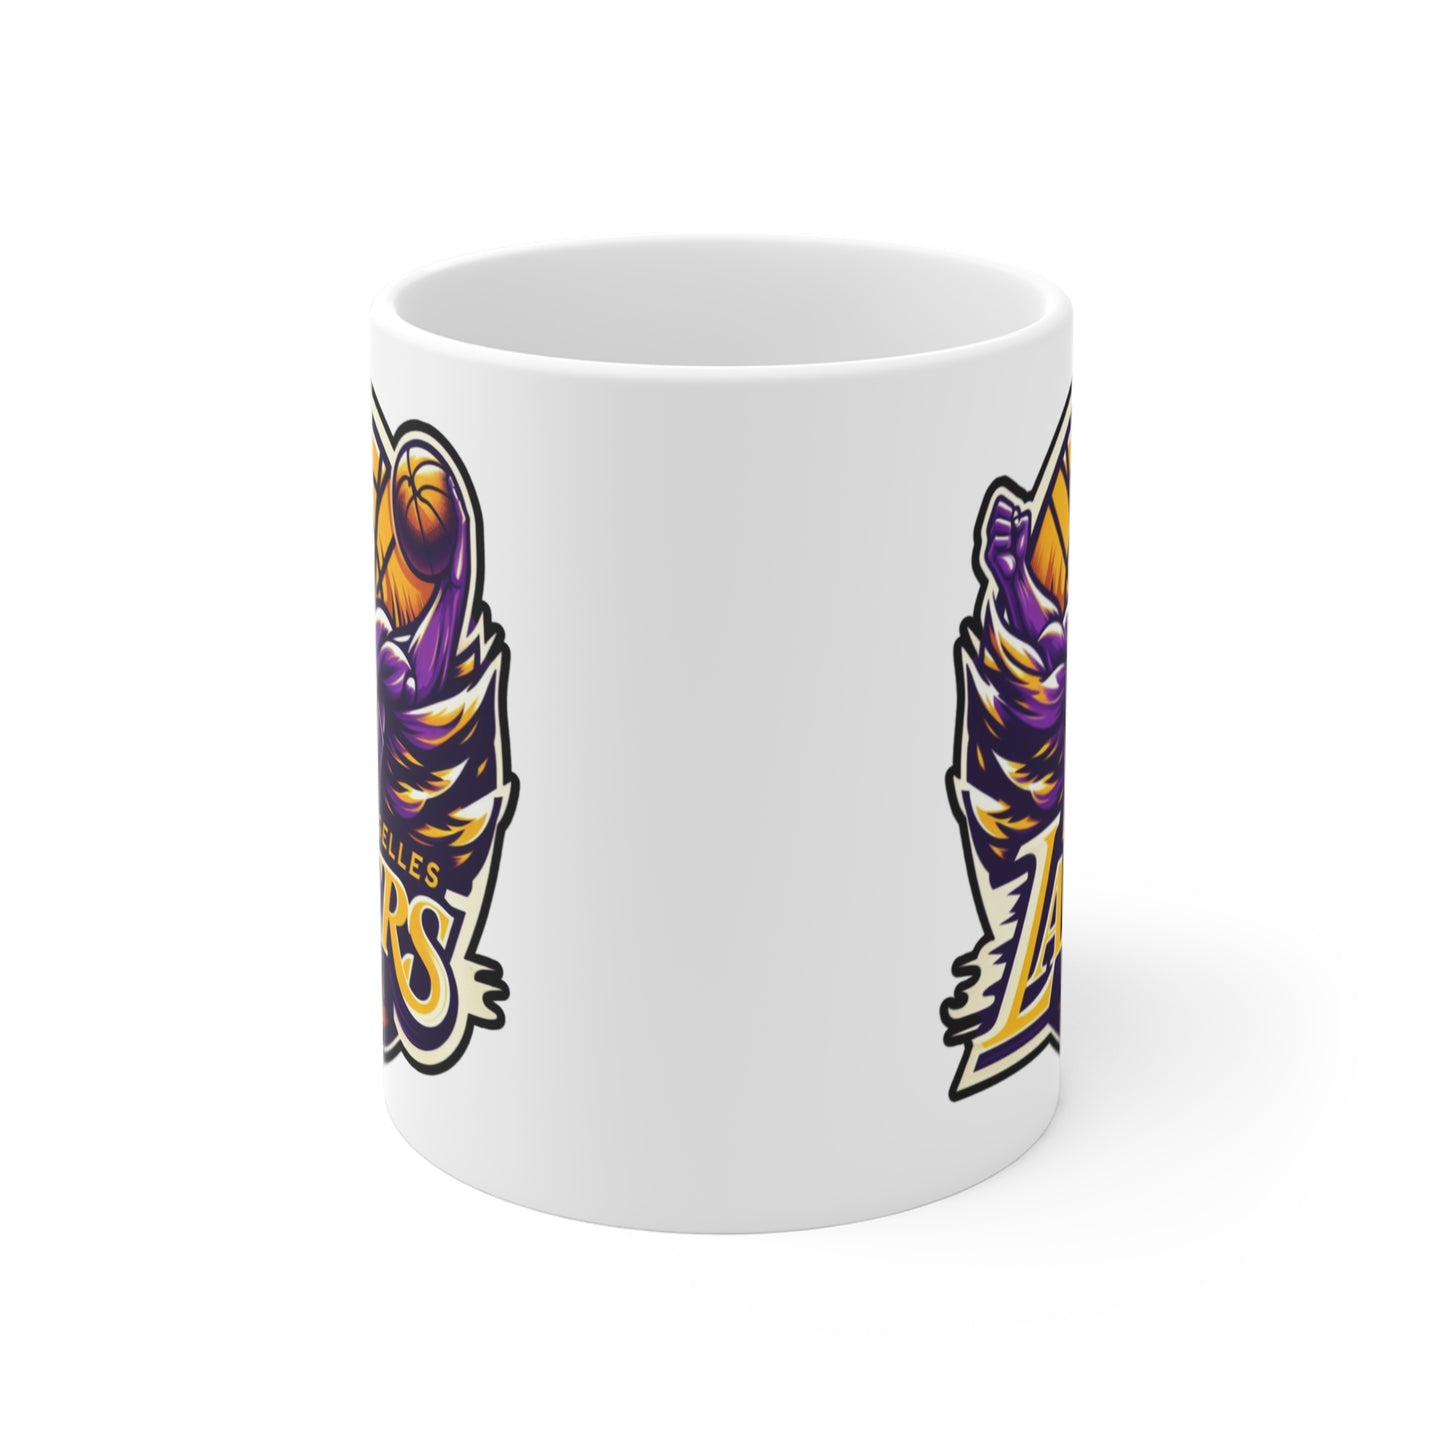 Mug with custom design 11oz, basketball lovers Cup (Los Angeles Lakers, NBA basketball team)